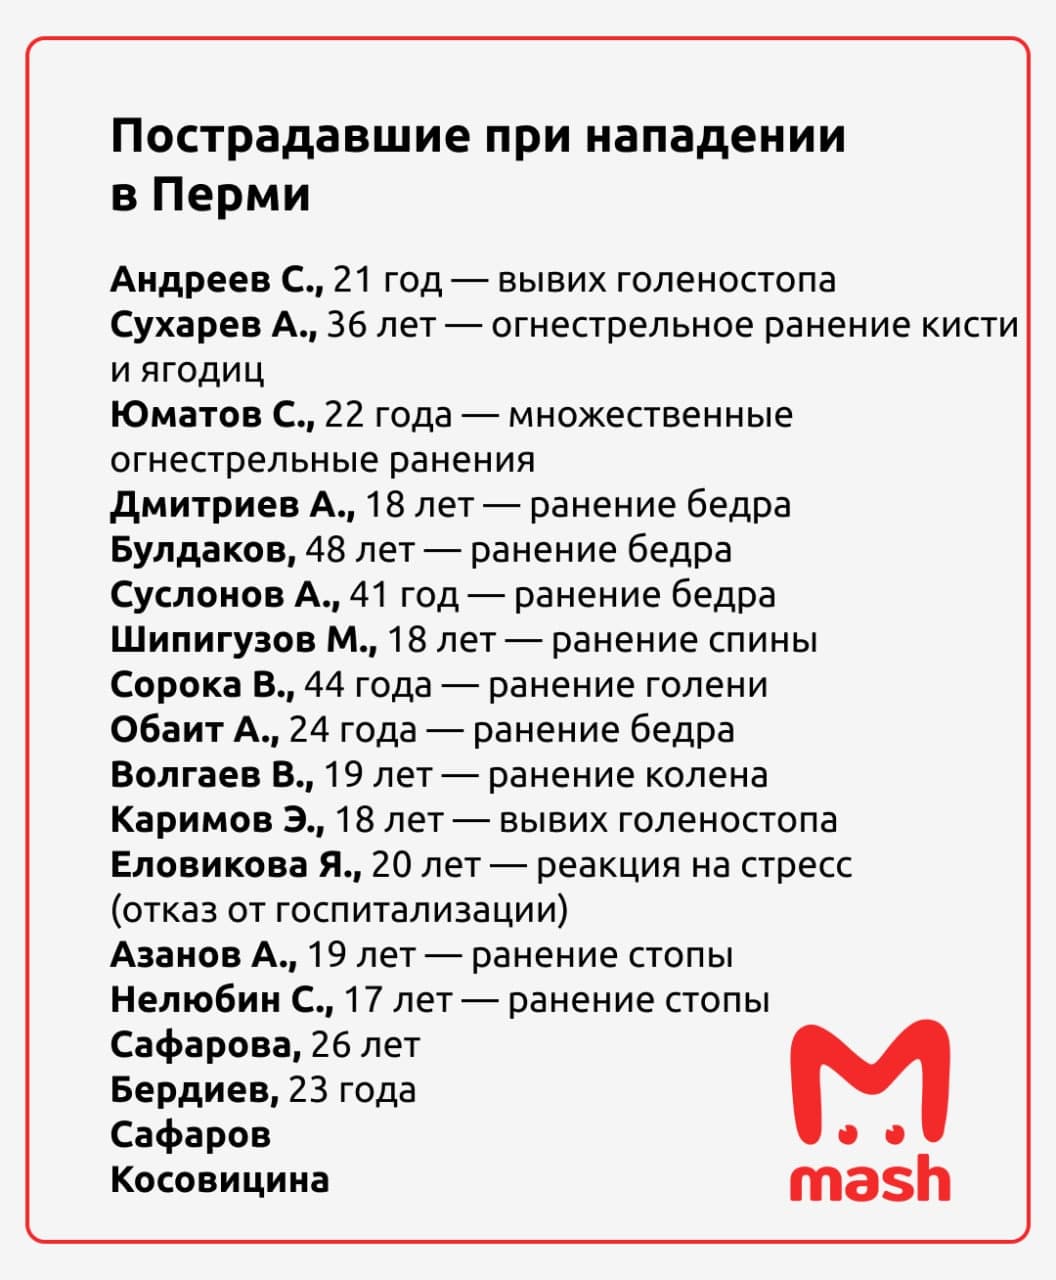 Предварительный список пострадавших при стрельбе в Пермском университете